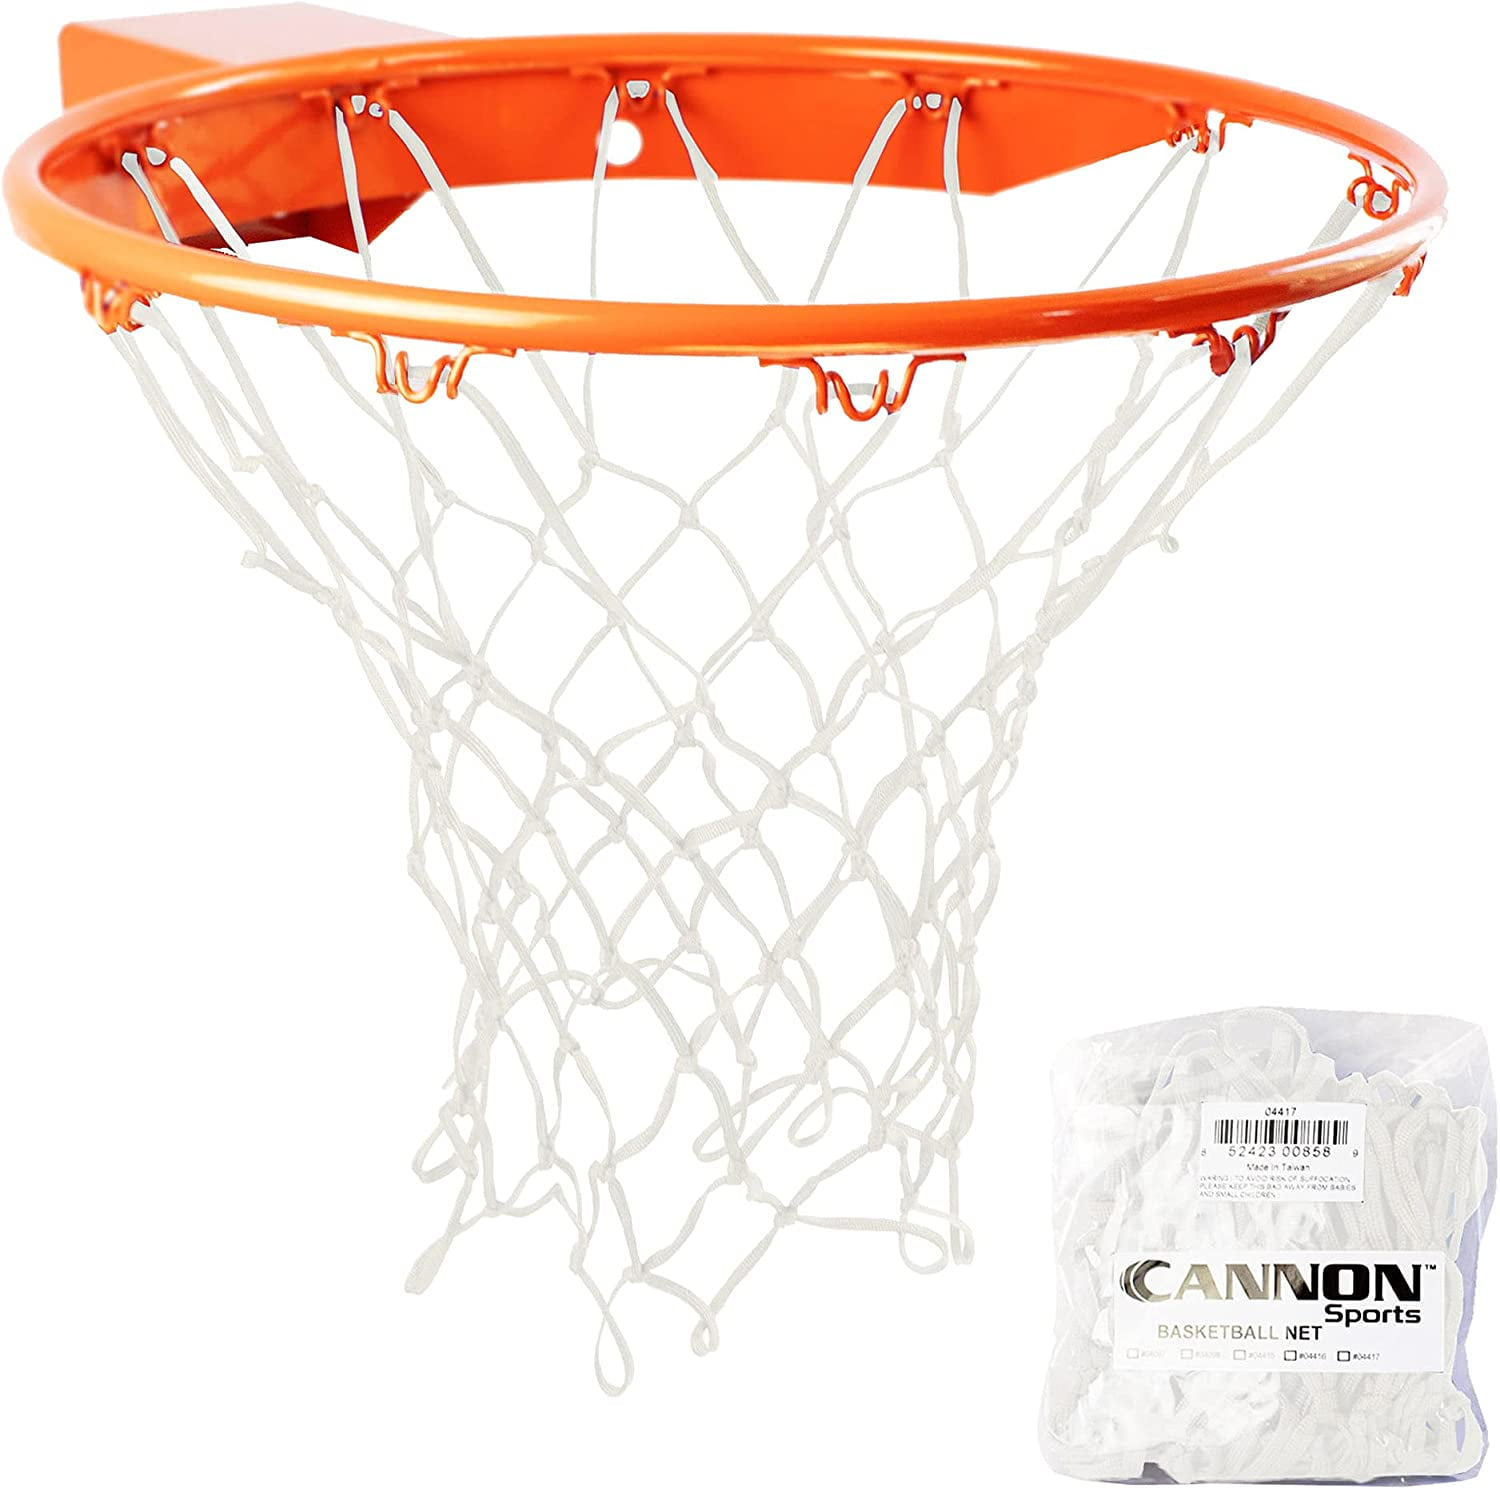 Standard 12 Hoop Durable Nylon Basketball Goal Hoop Net Red/White/Blue Sports 